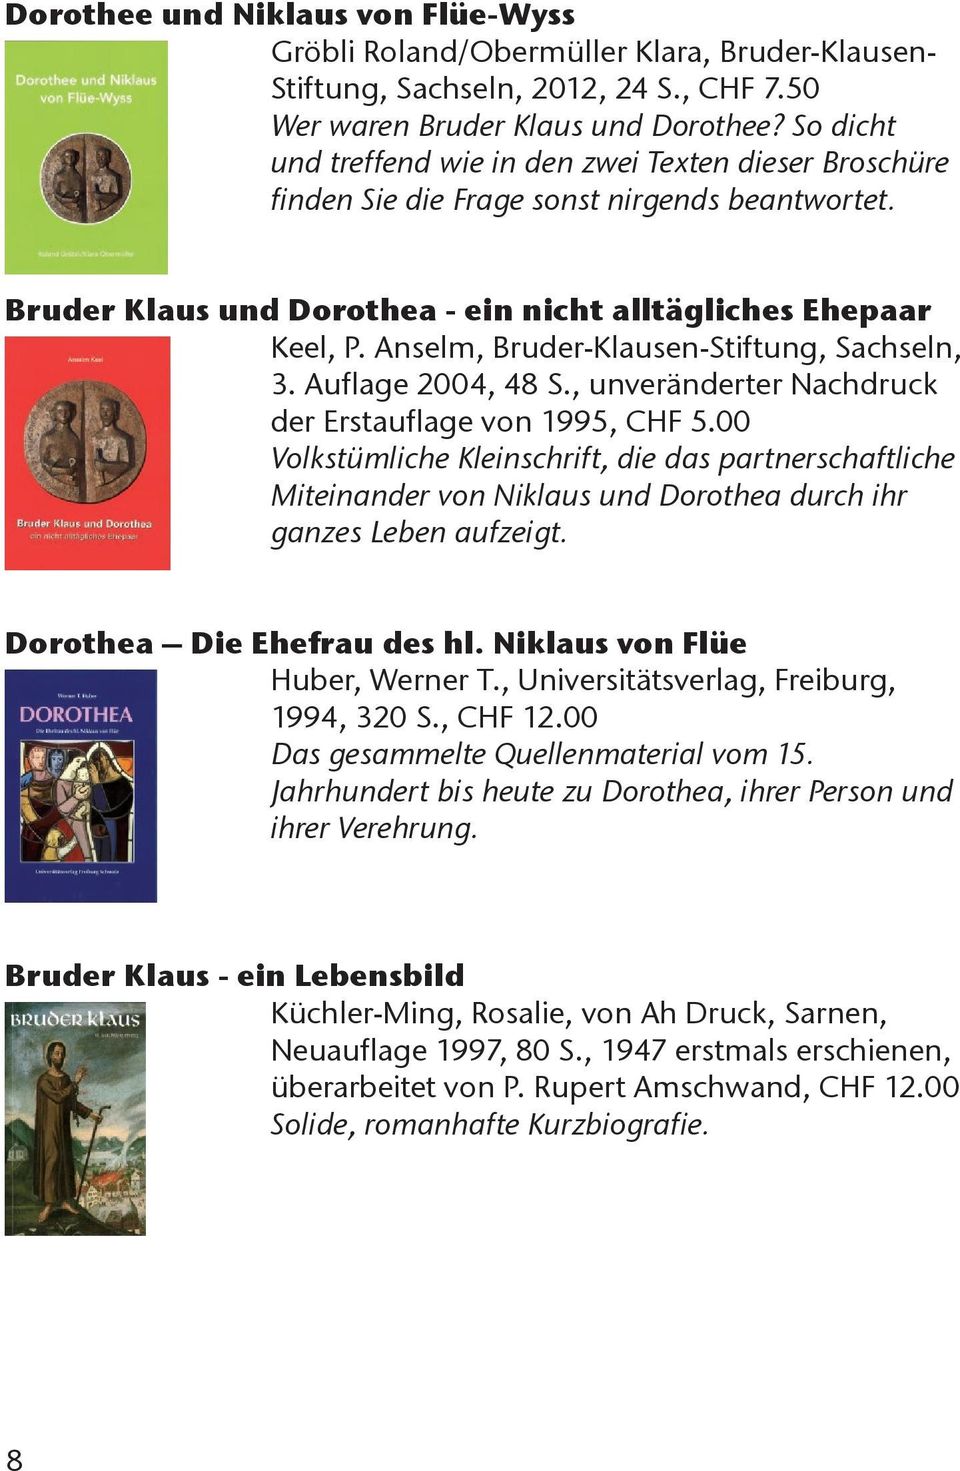 Anselm, Bruder-Klausen-Stiftung, Sachseln, 3. Auflage 2004, 48 S., unveränderter Nachdruck der Erstauflage von 1995, CHF 5.